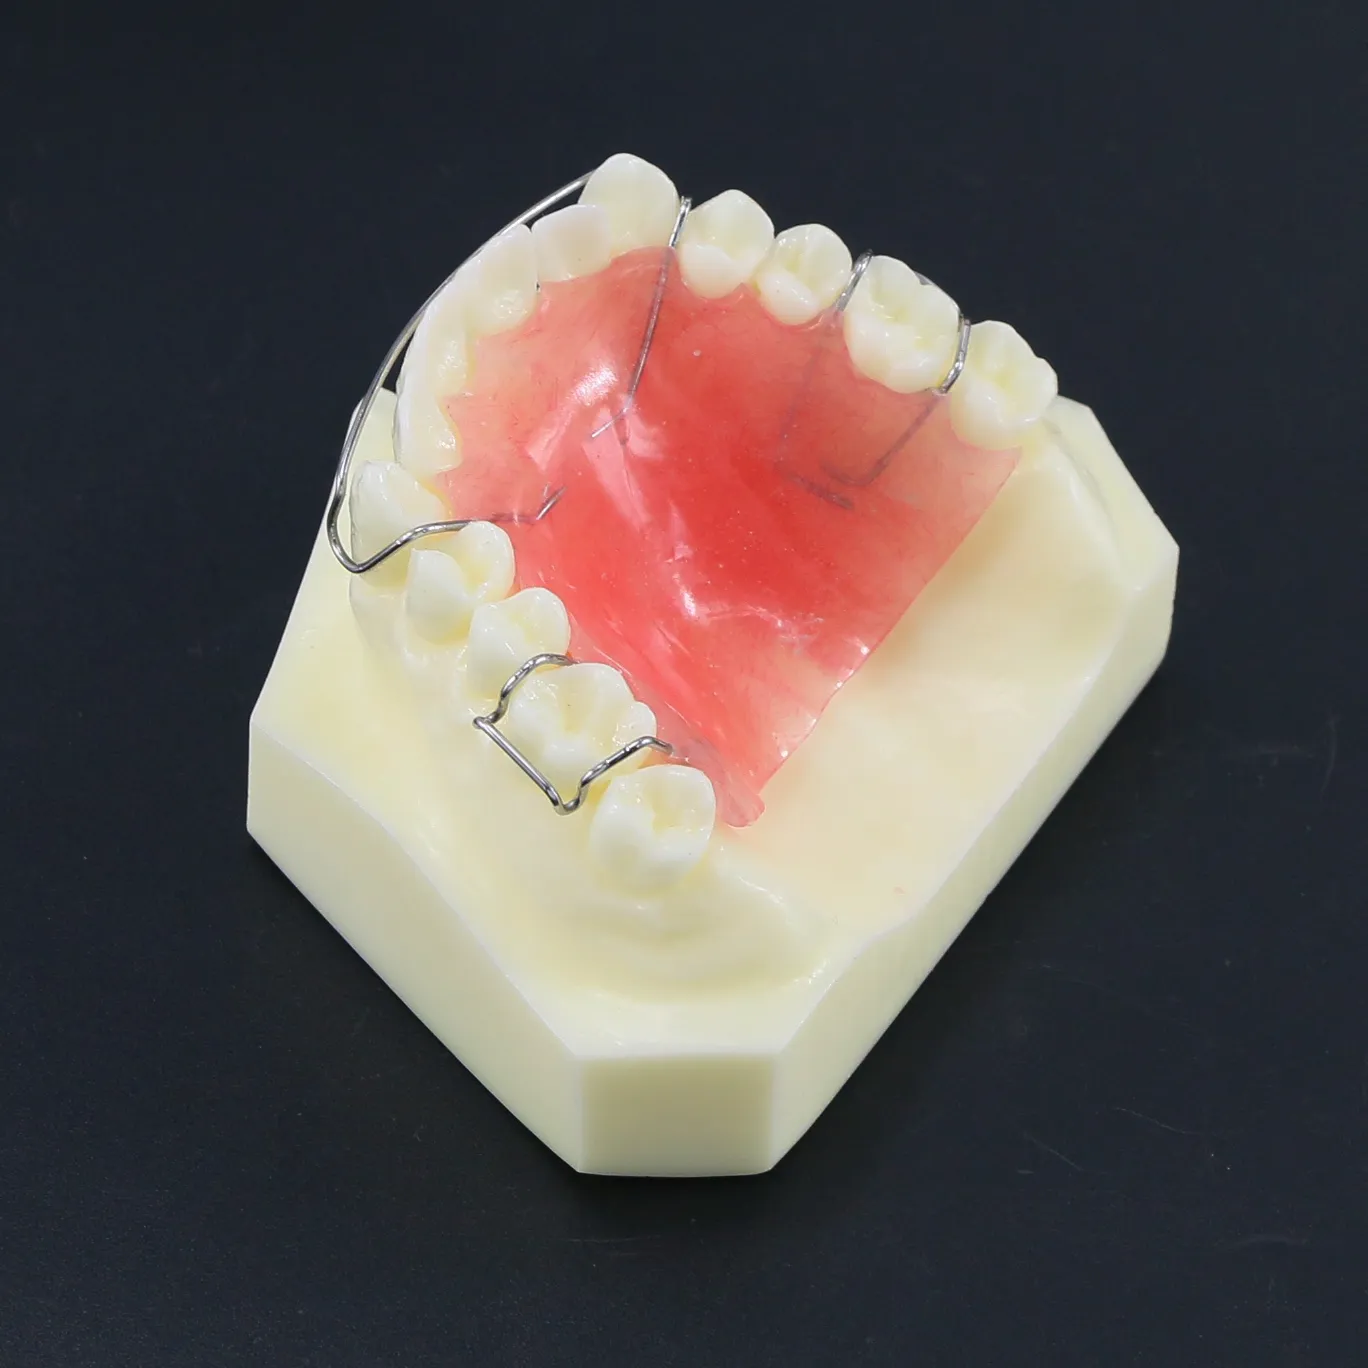 Trattamento ortodontico dentale Denti denti Modello typodont m3007 con fermo hawley per studio di studio di laboratorio dentale